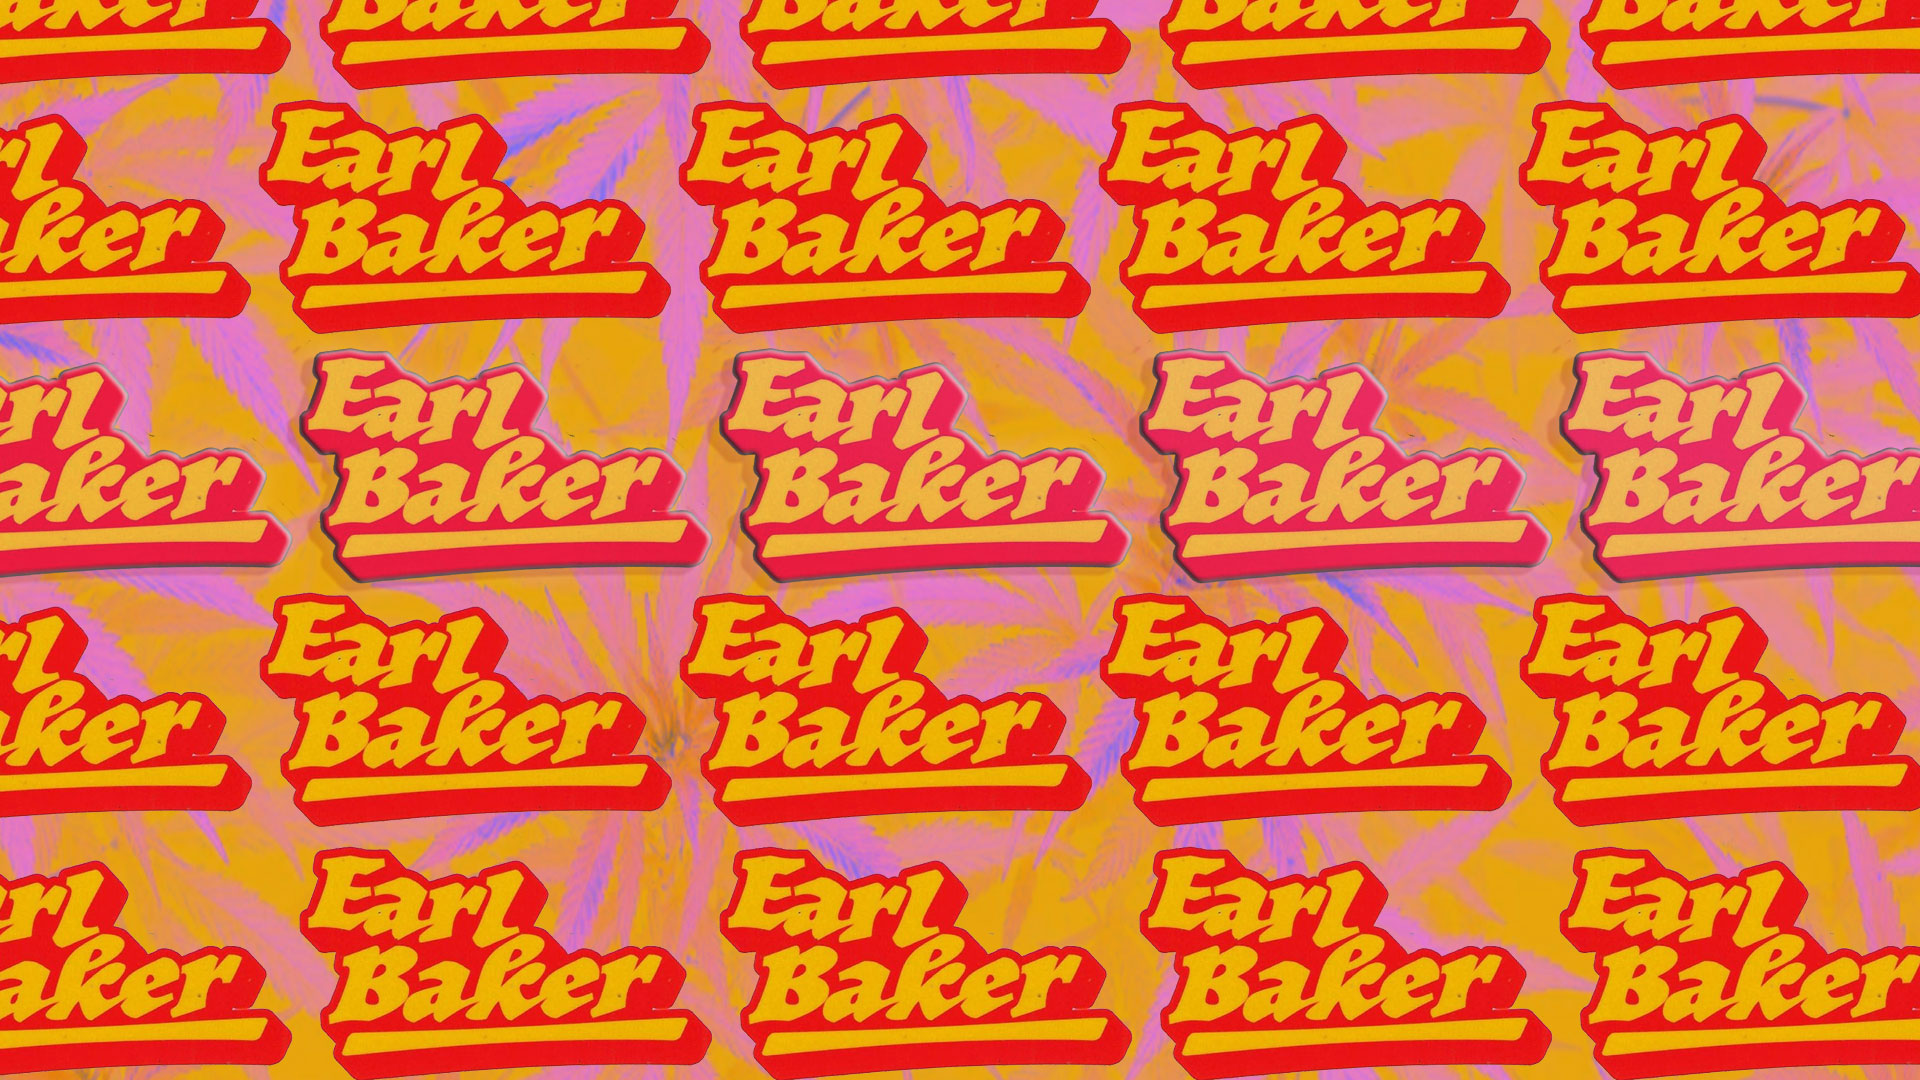 Earl Baker Flower Drop!